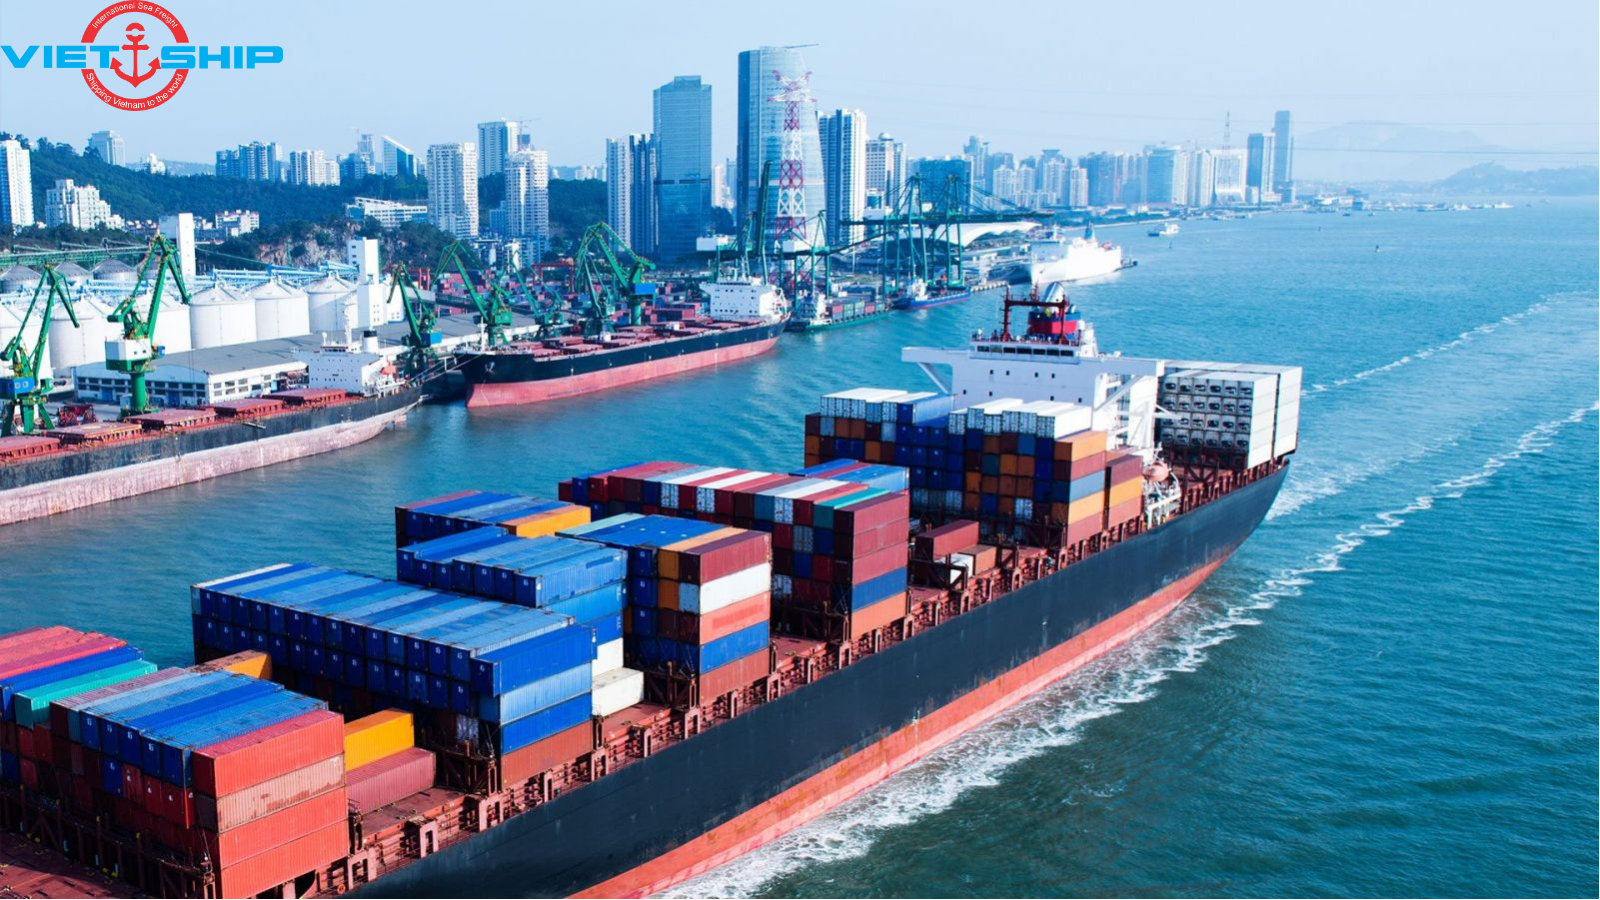 CFR là một trong những thuật ngữ phổ biến trong xuất nhập khẩu hiện nay đặc biệt là ở vận chuyển đường biển. Vậy bạn hiểu CFR là gì? Giá CFR trong xuất